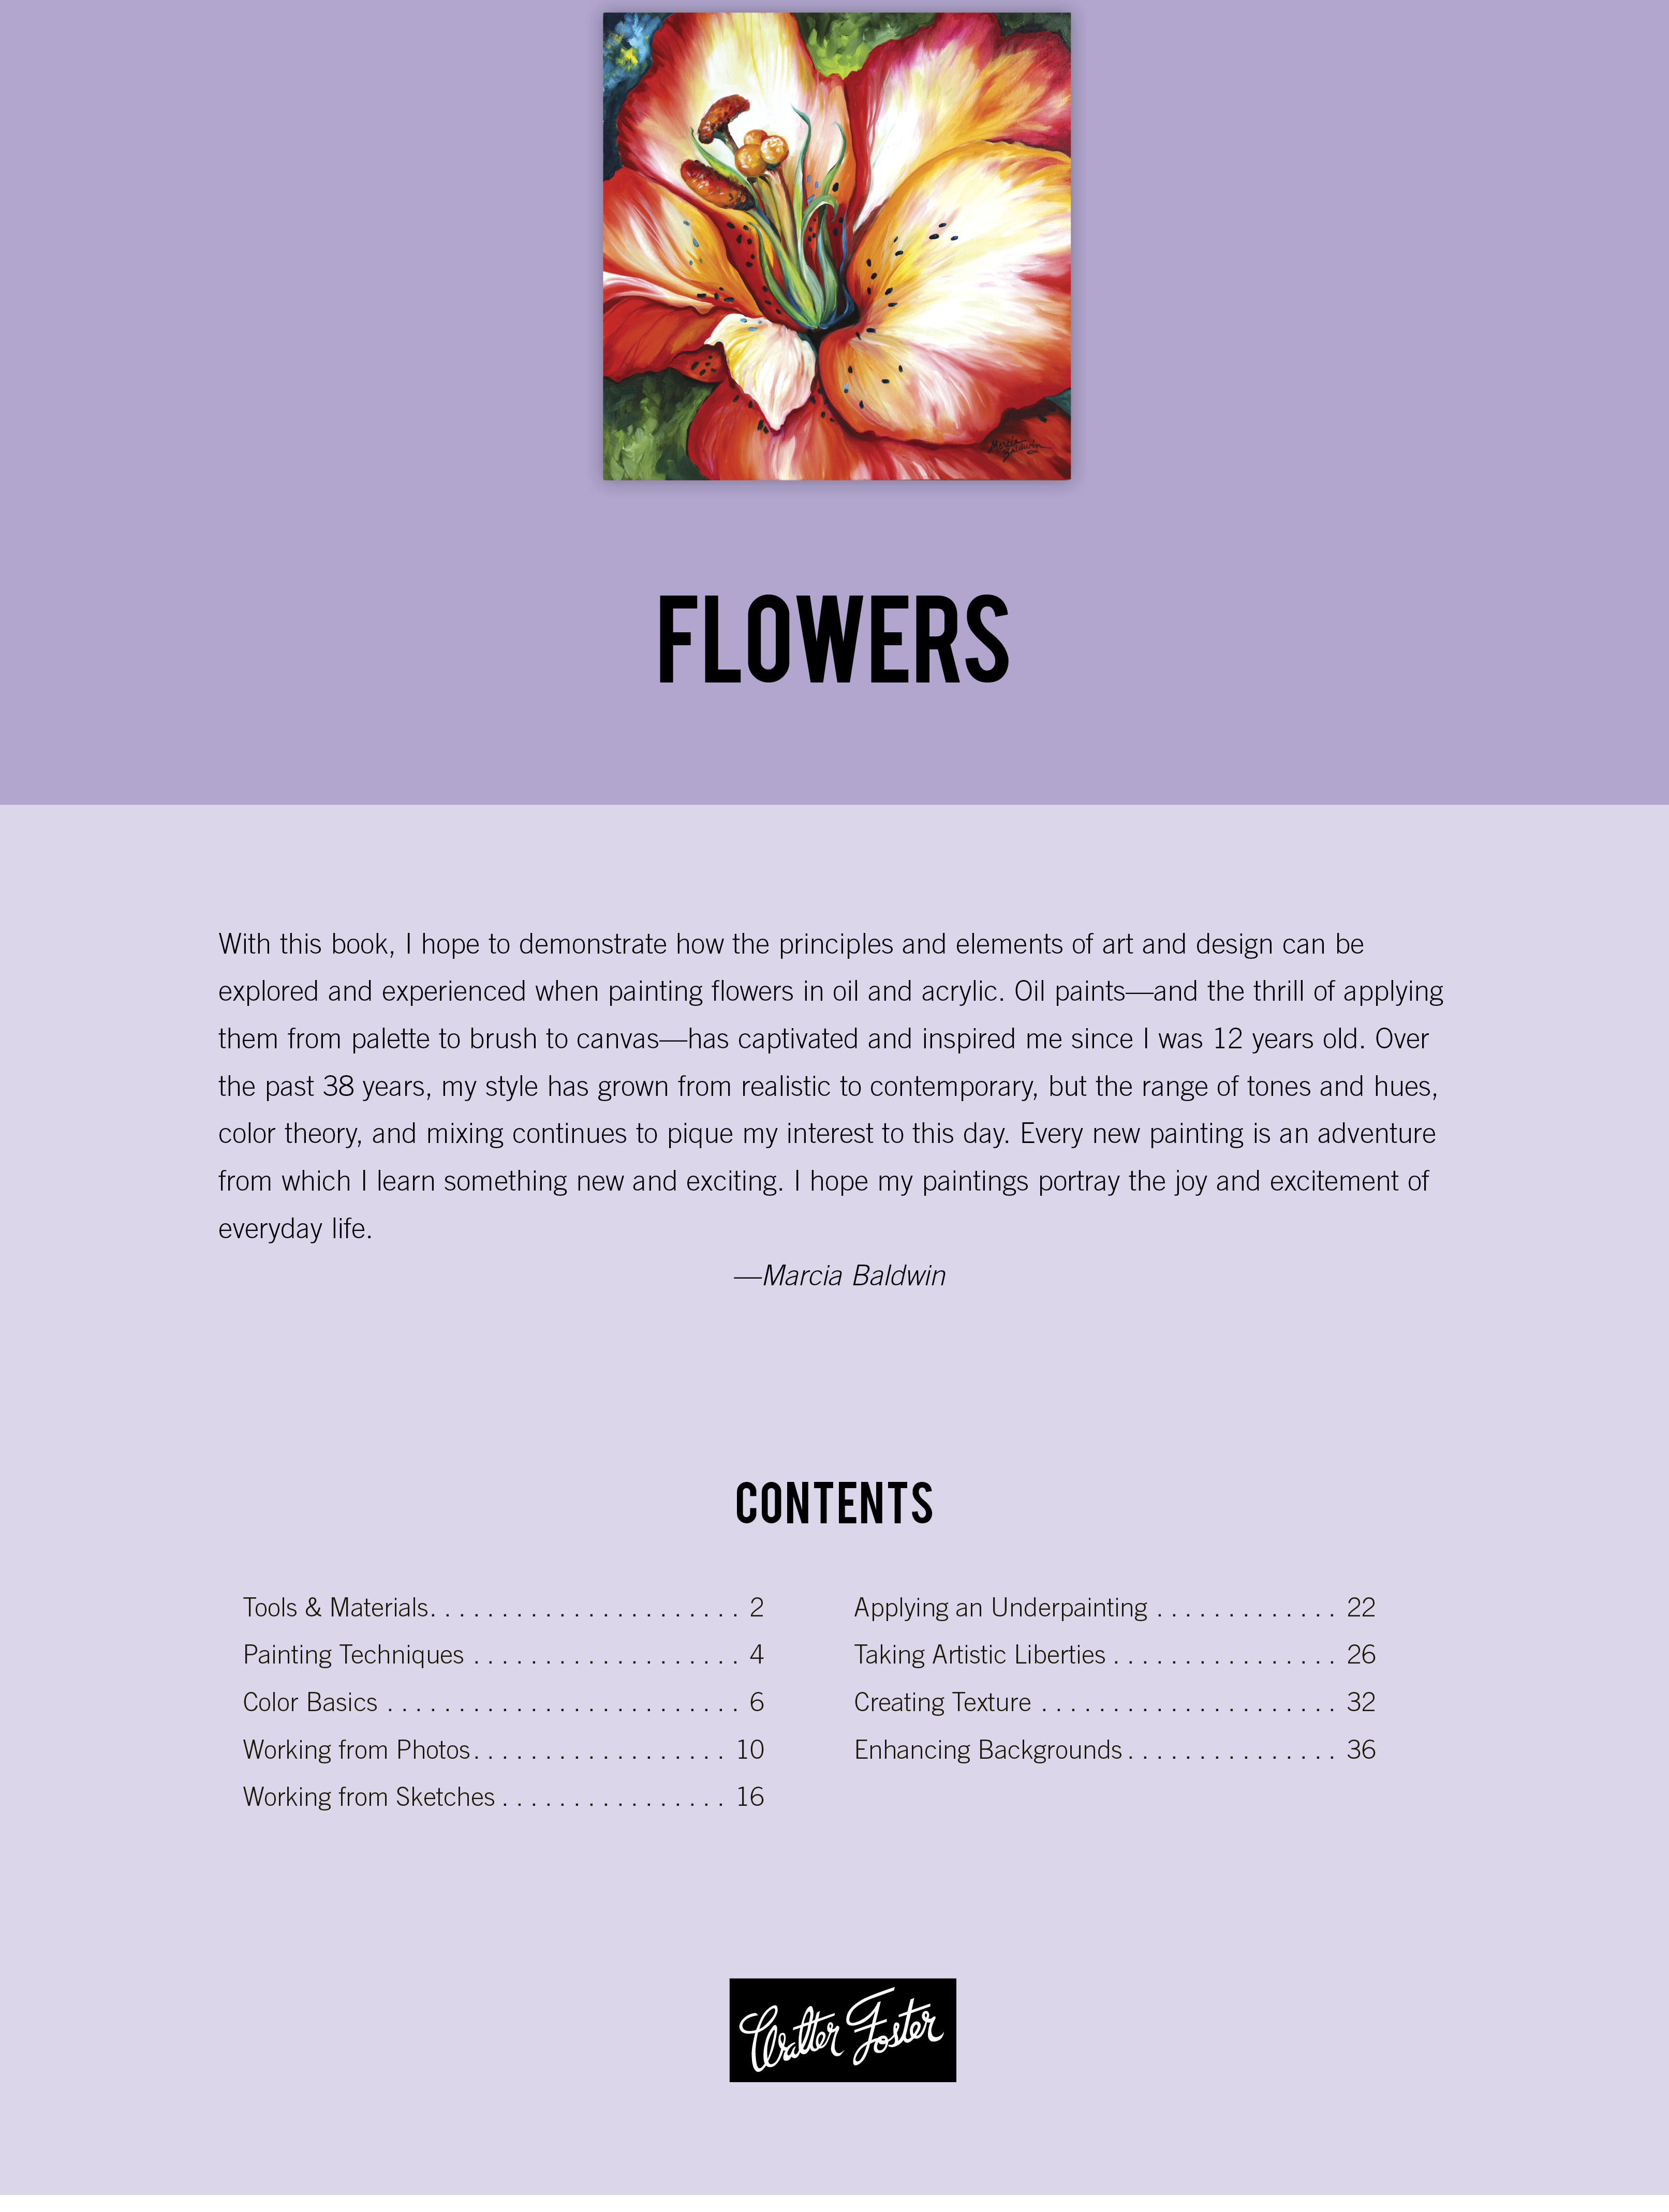 Oil & Acrylic: Flowers